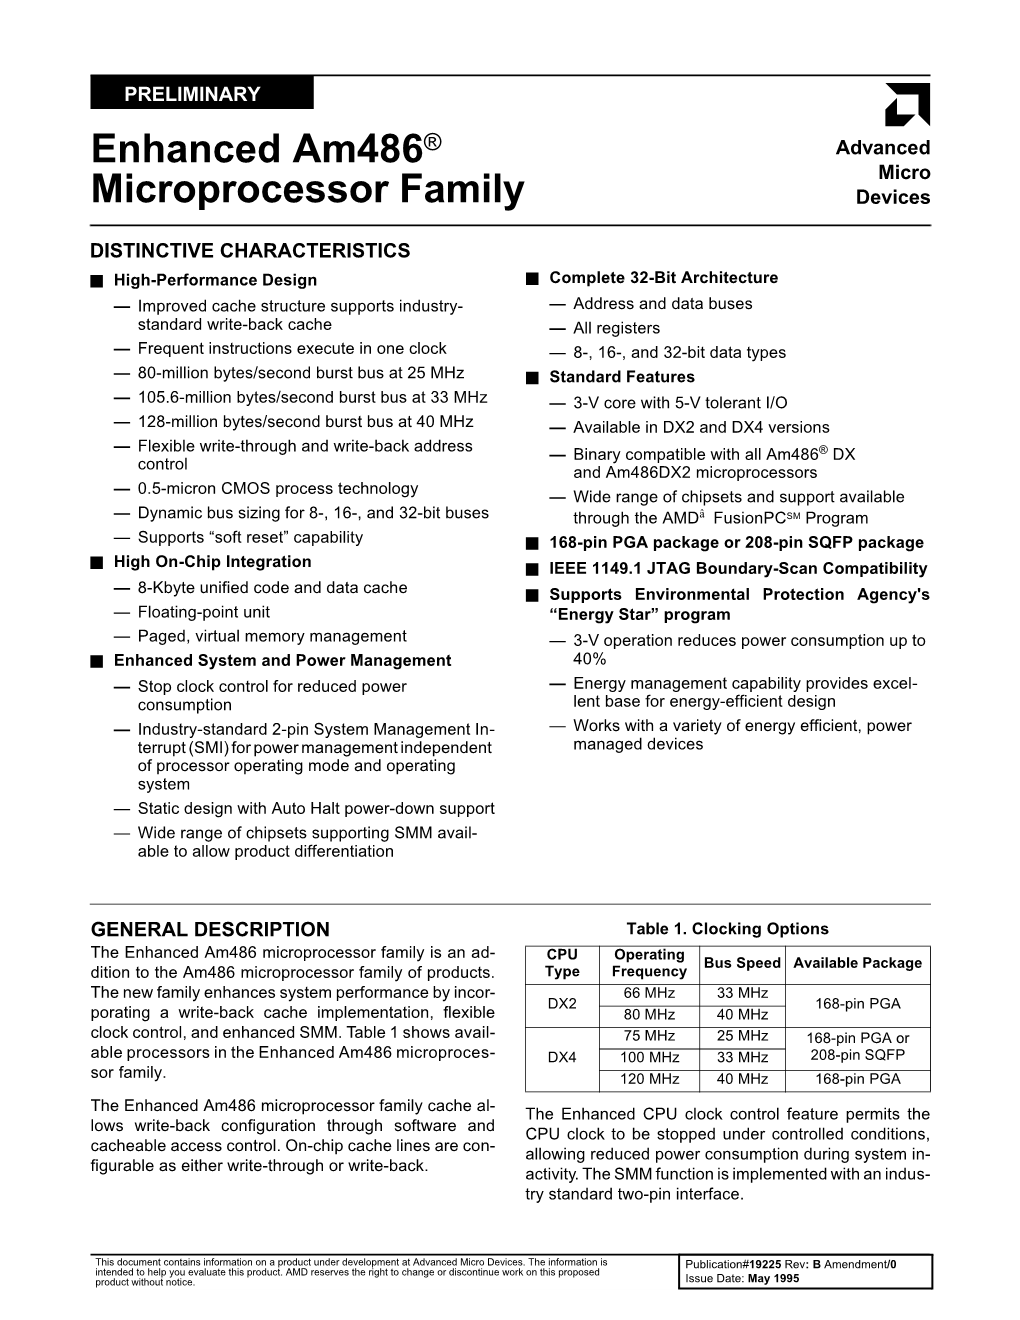 Enhanced Am486® Microprocessor Family